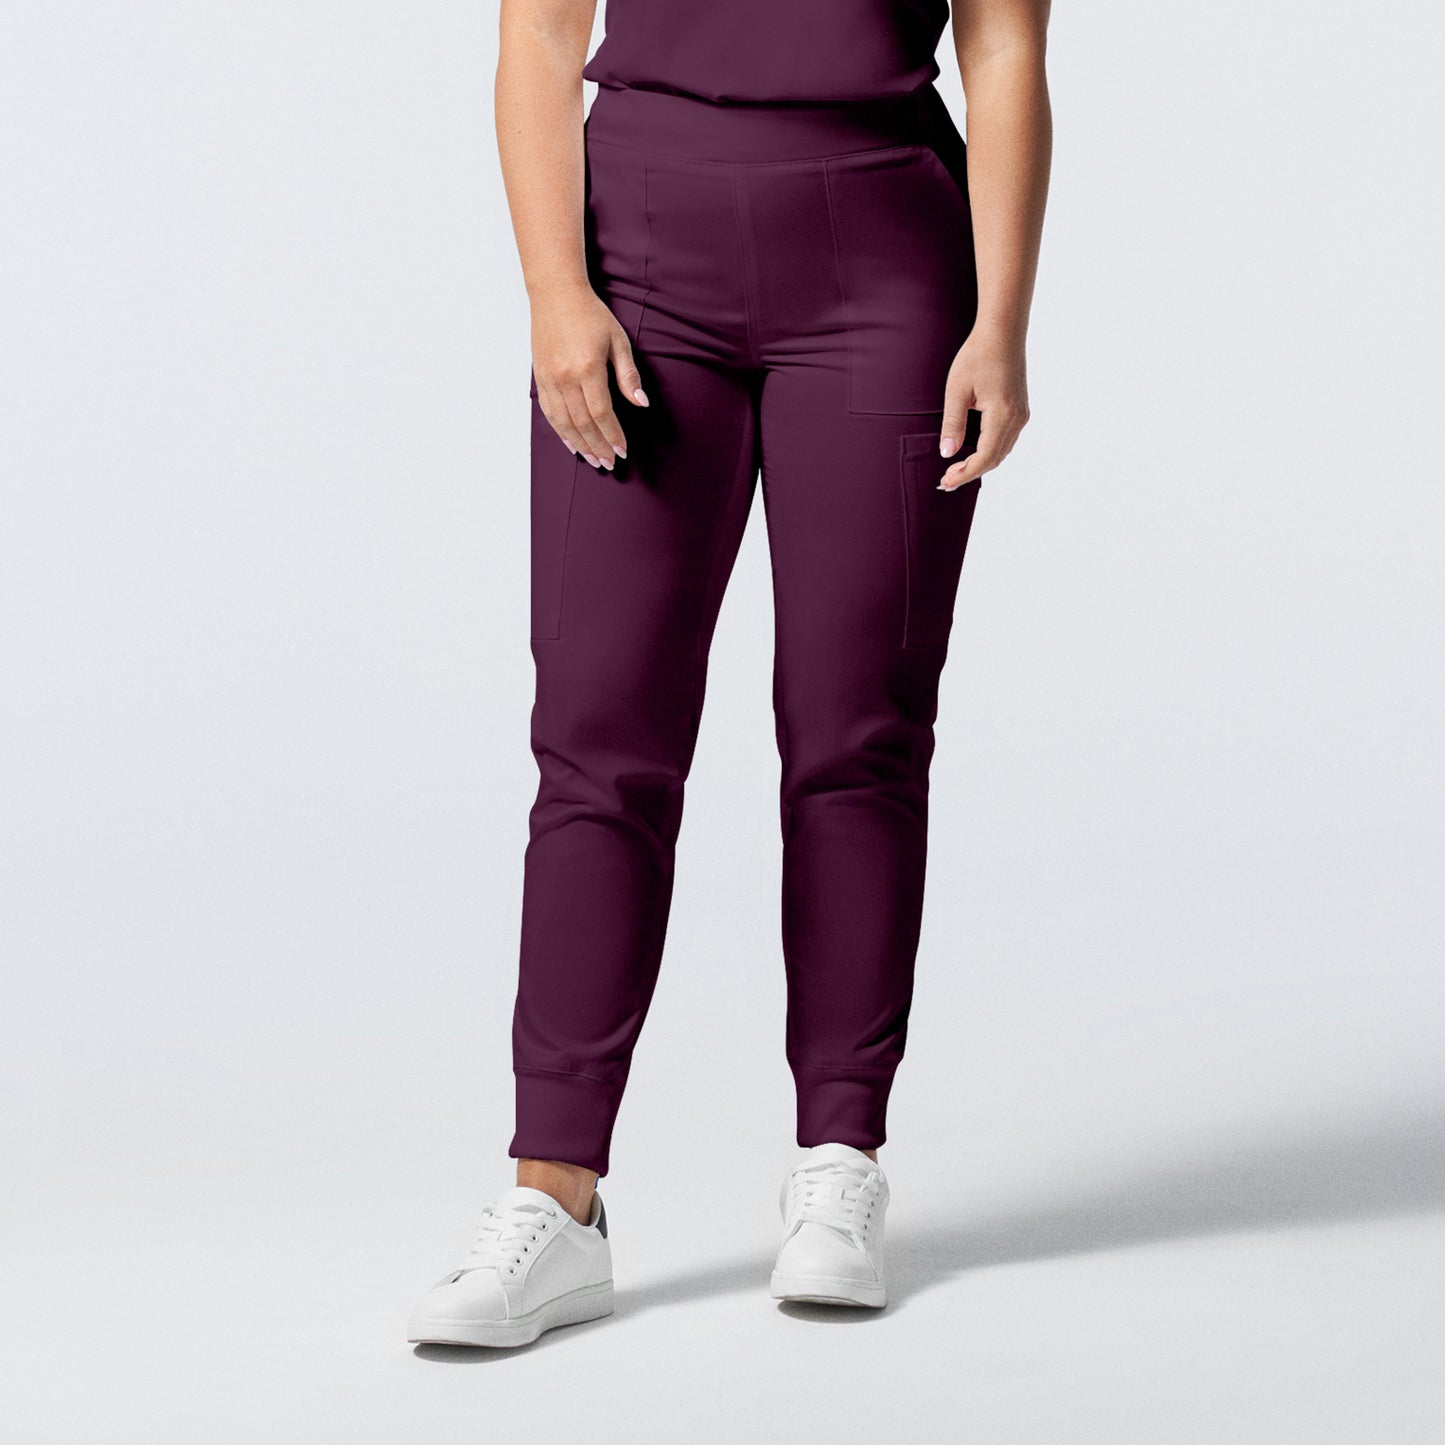 Women's jogger pants - PROFLEX - L406P short – Uniformes Direct